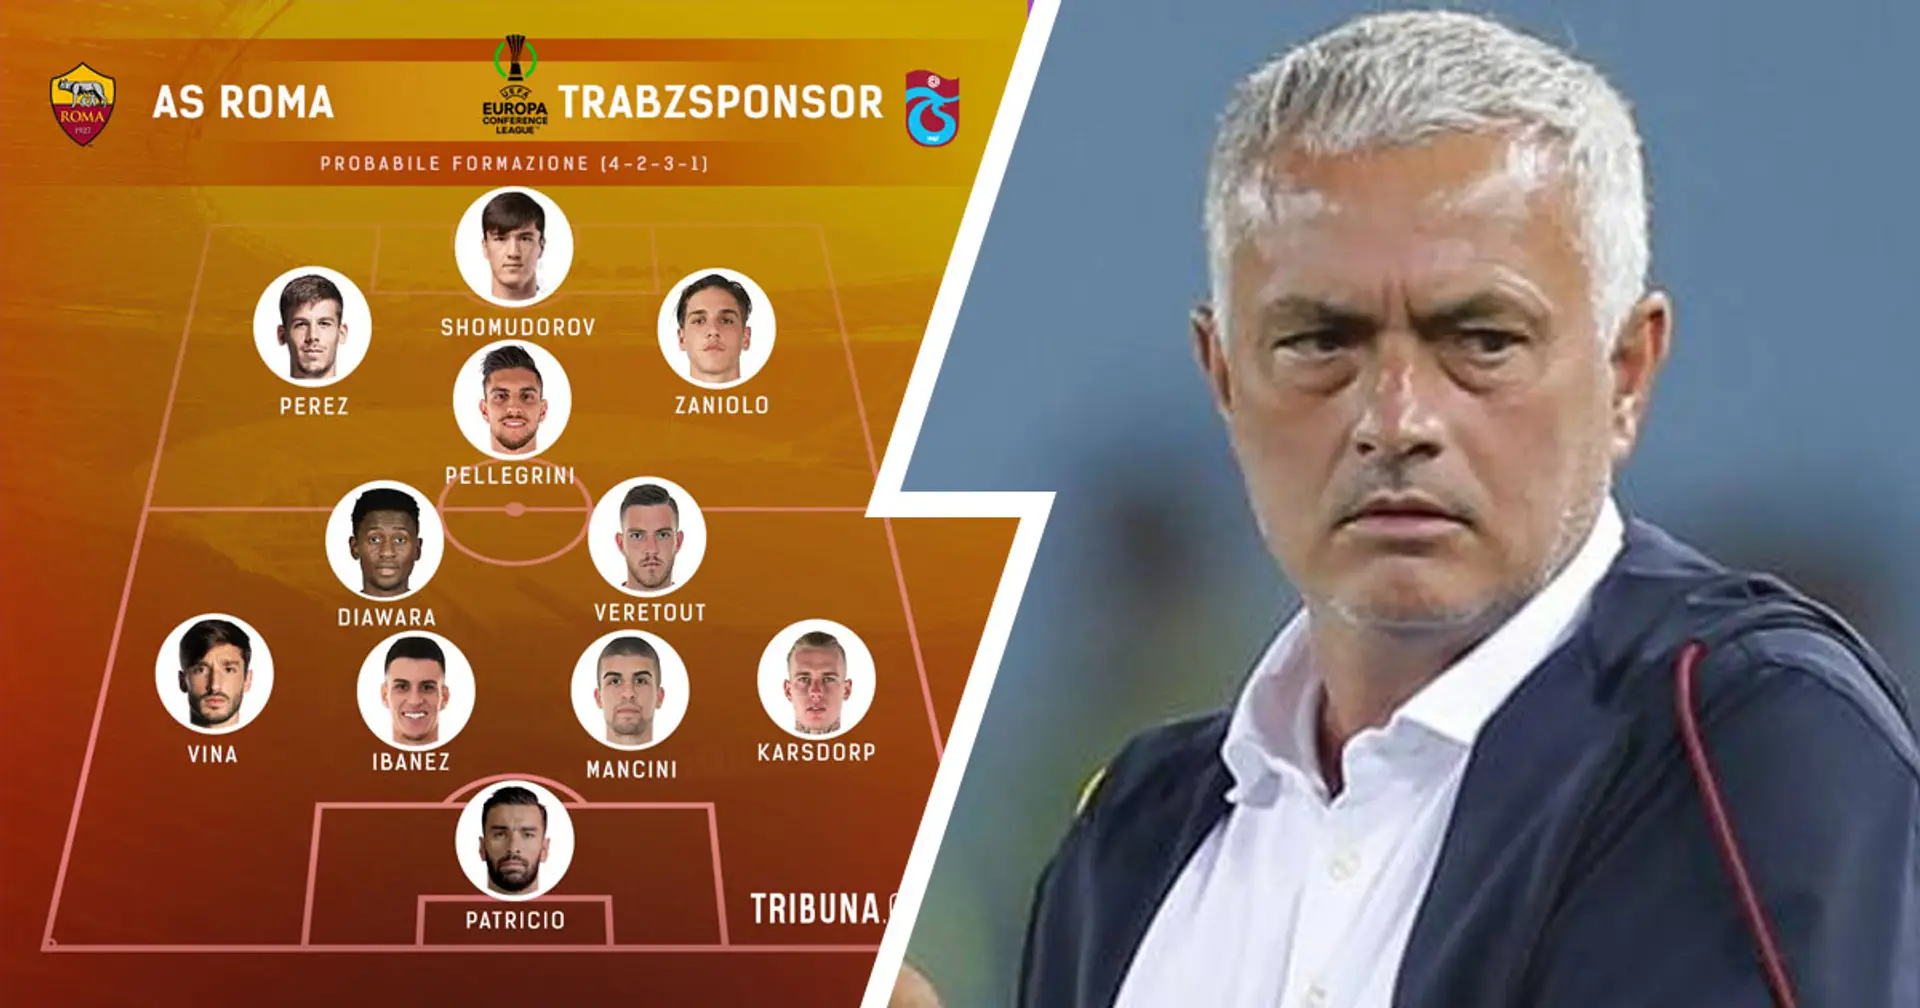 Roma vs Trabzonspor, probabili formazioni e ultime notizie: cambi in vista per Mourinho dal centrocampo in su